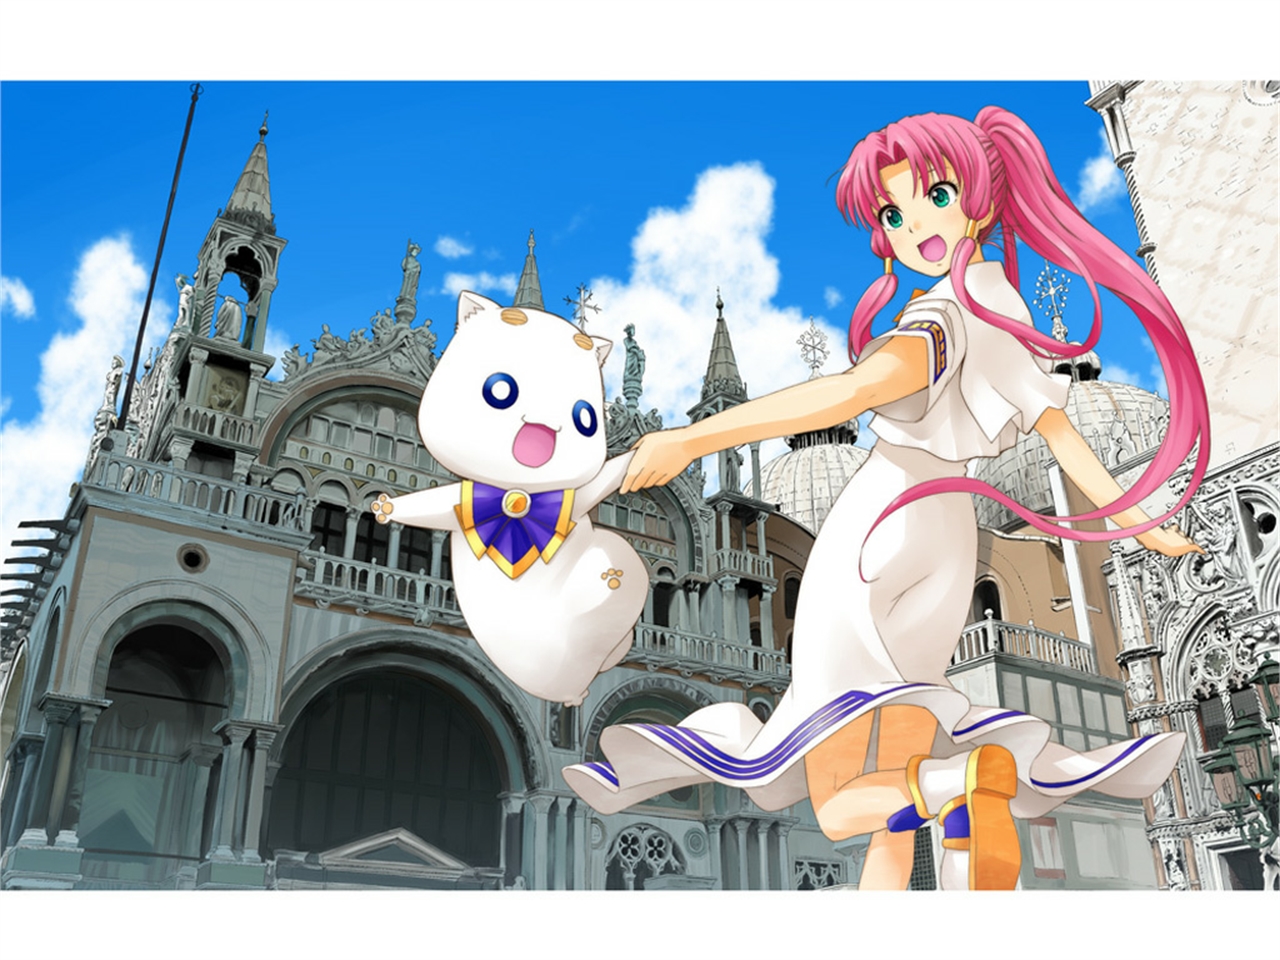 Baixe gratuitamente a imagem Anime, Ária na área de trabalho do seu PC